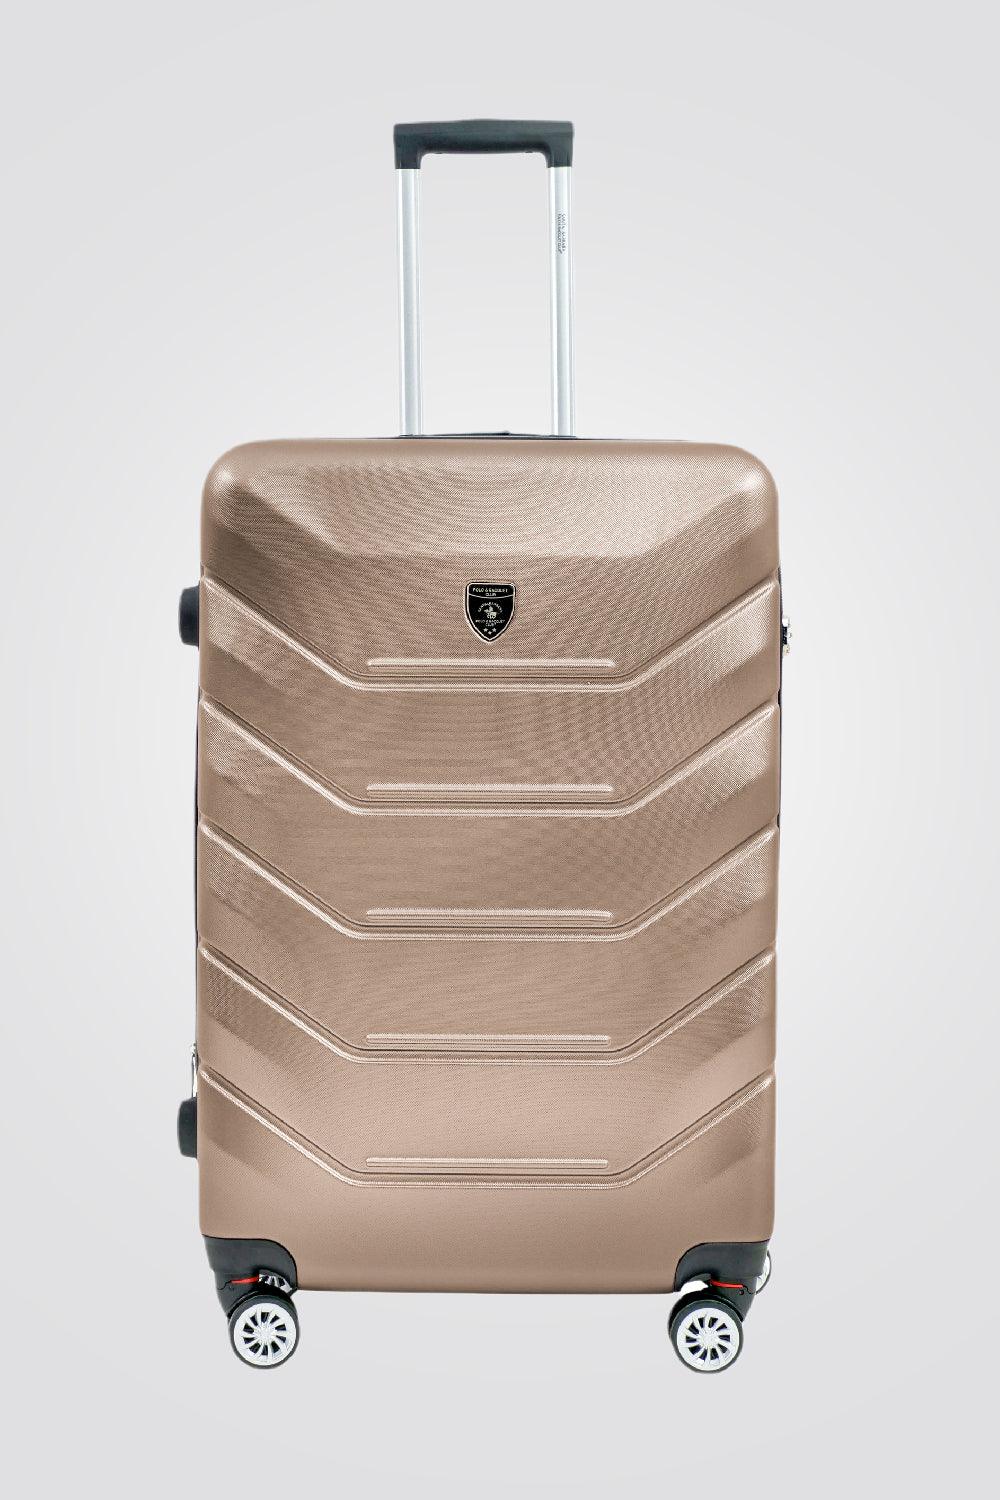 SANTA BARBARA POLO & RAQUET CLUB - מזוודה קשיחה גדולה 28" דגם 1701 בצבע שמפנייה - MASHBIR//365